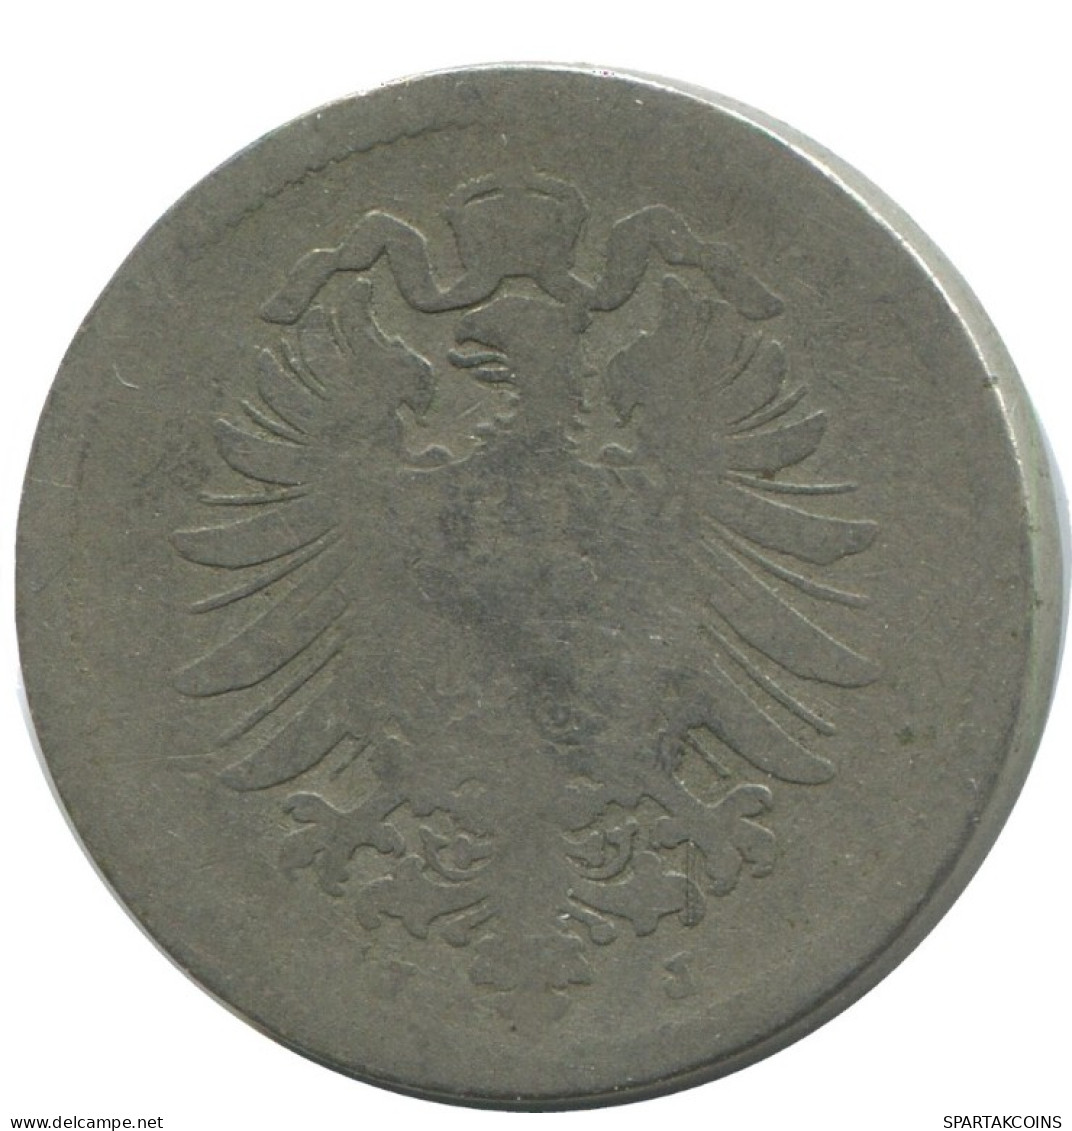 10 PFENNIG 1875 J GERMANY Coin #AD503.9.U.A - 10 Pfennig